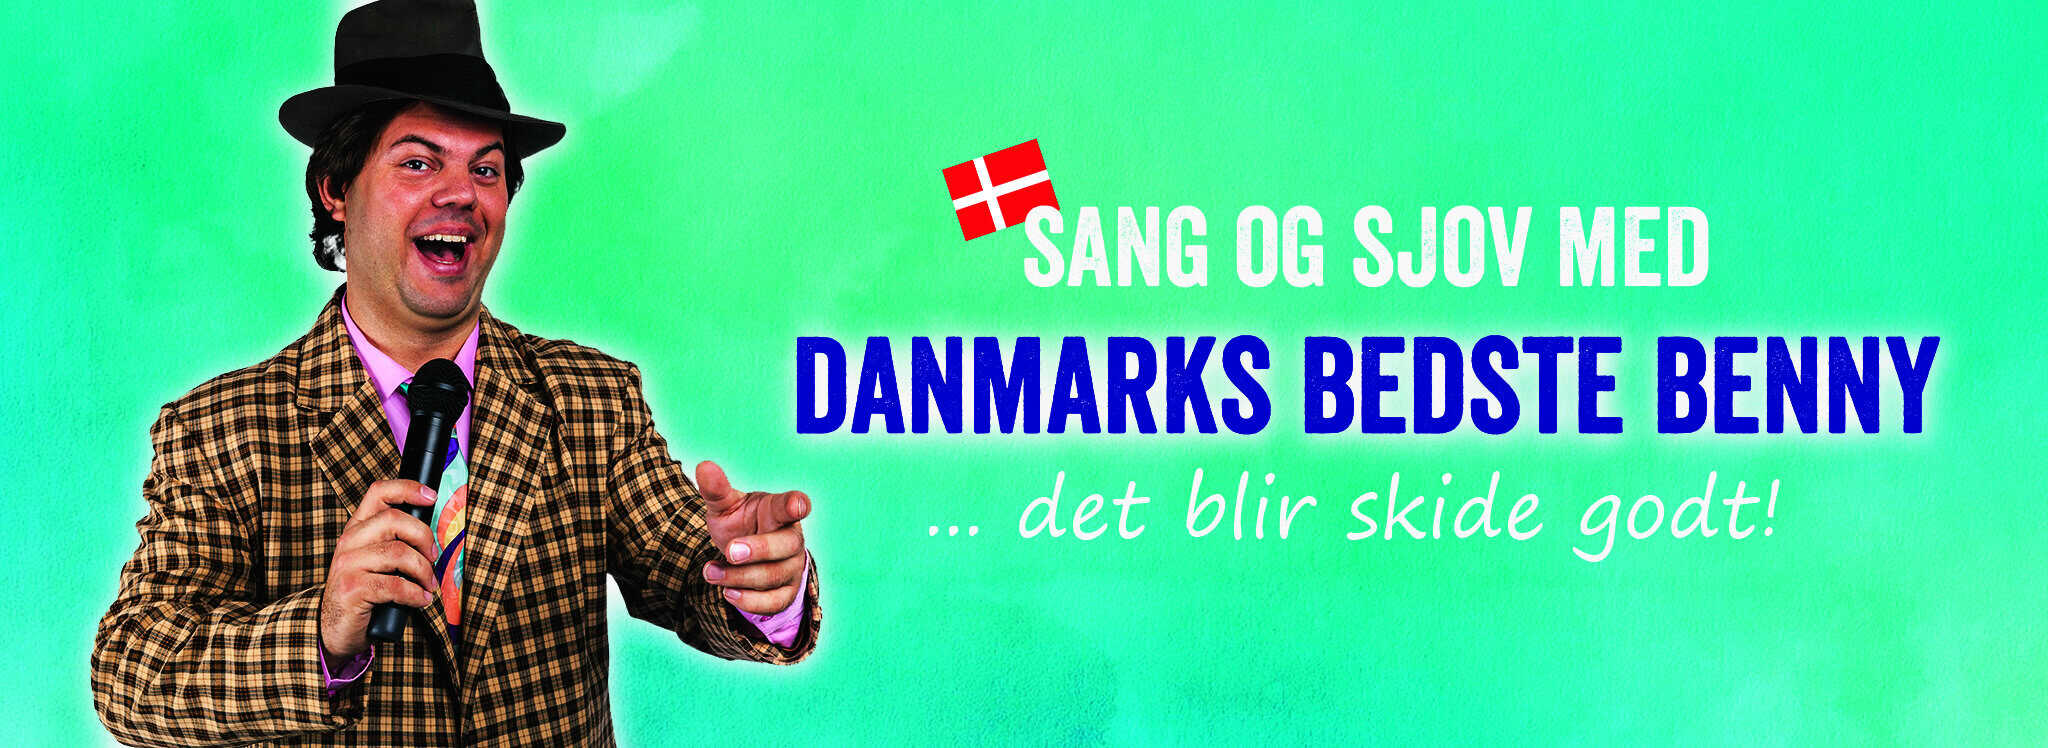 Danmarks Bedste Benny banner